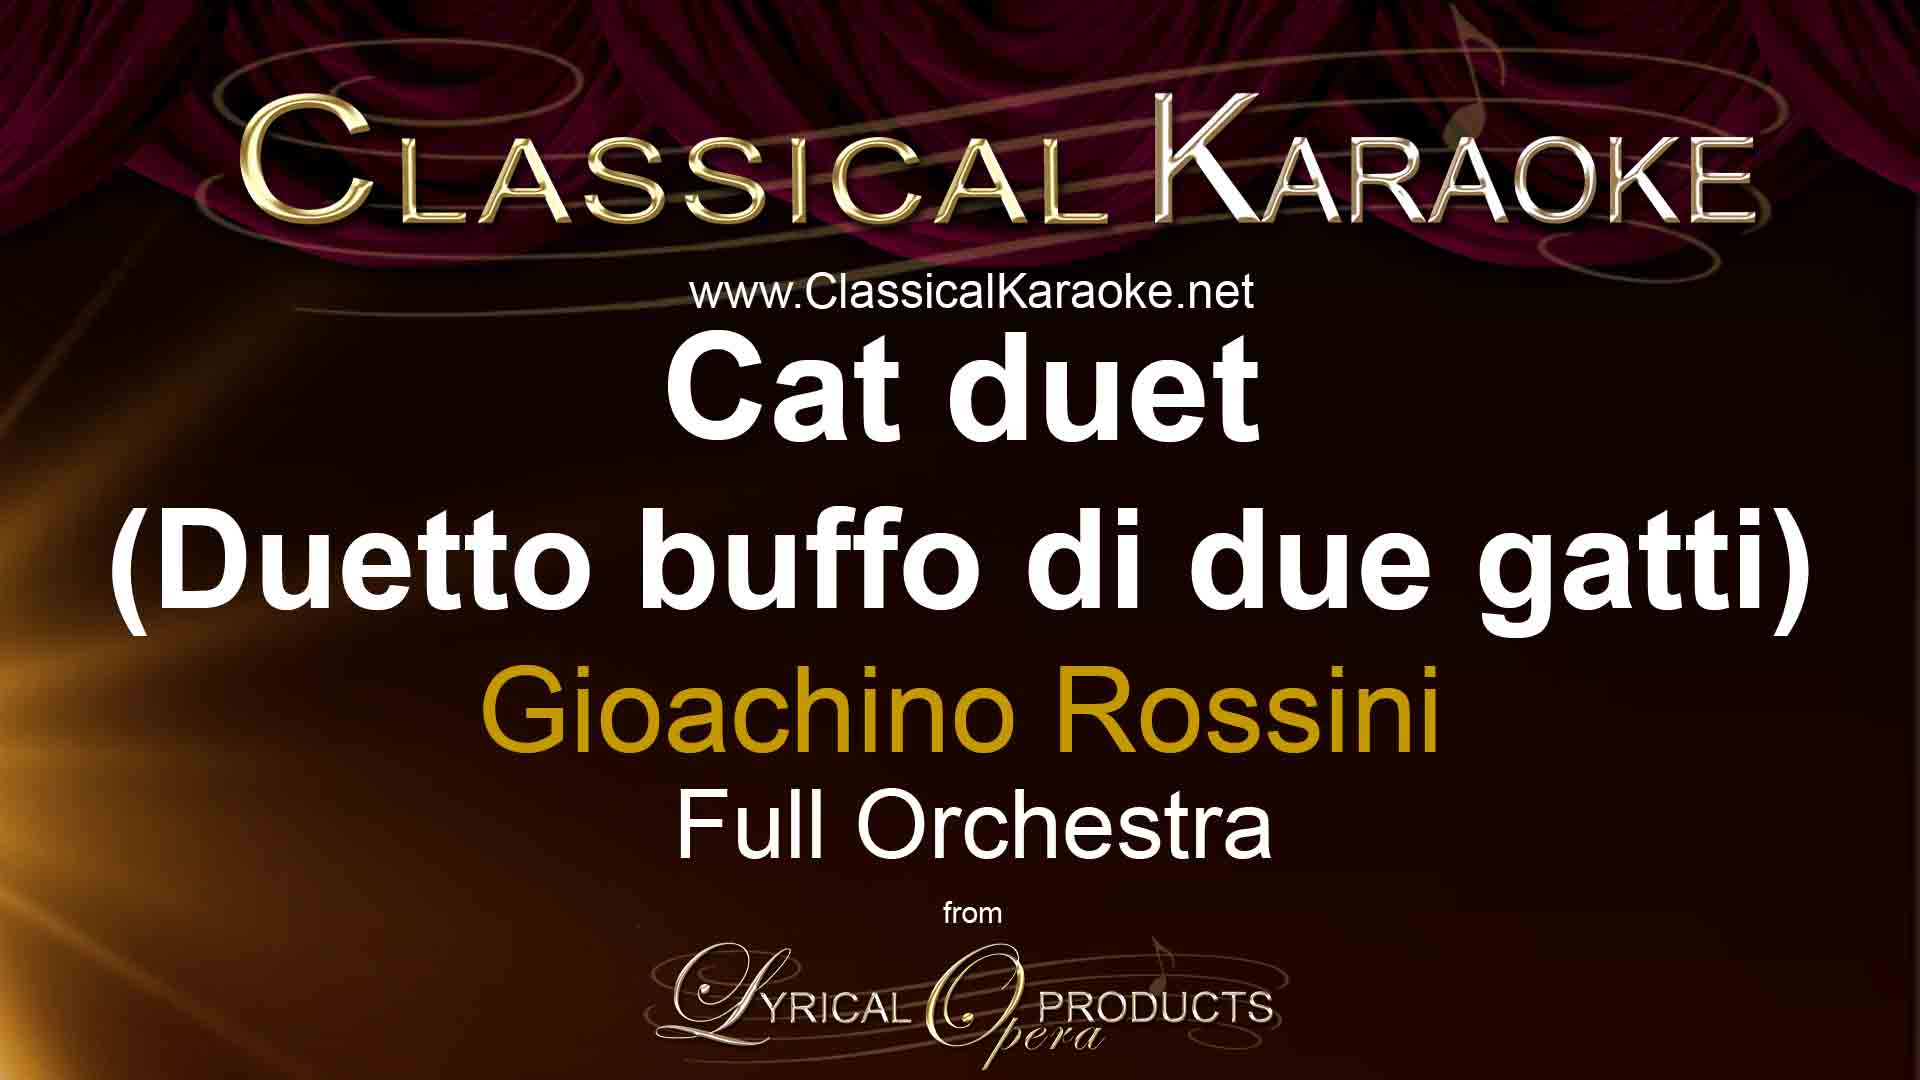 Cat duet (Duetto buffo di due gatti), by Rossini, Full Orchestral Accompaniment (karaoke) track